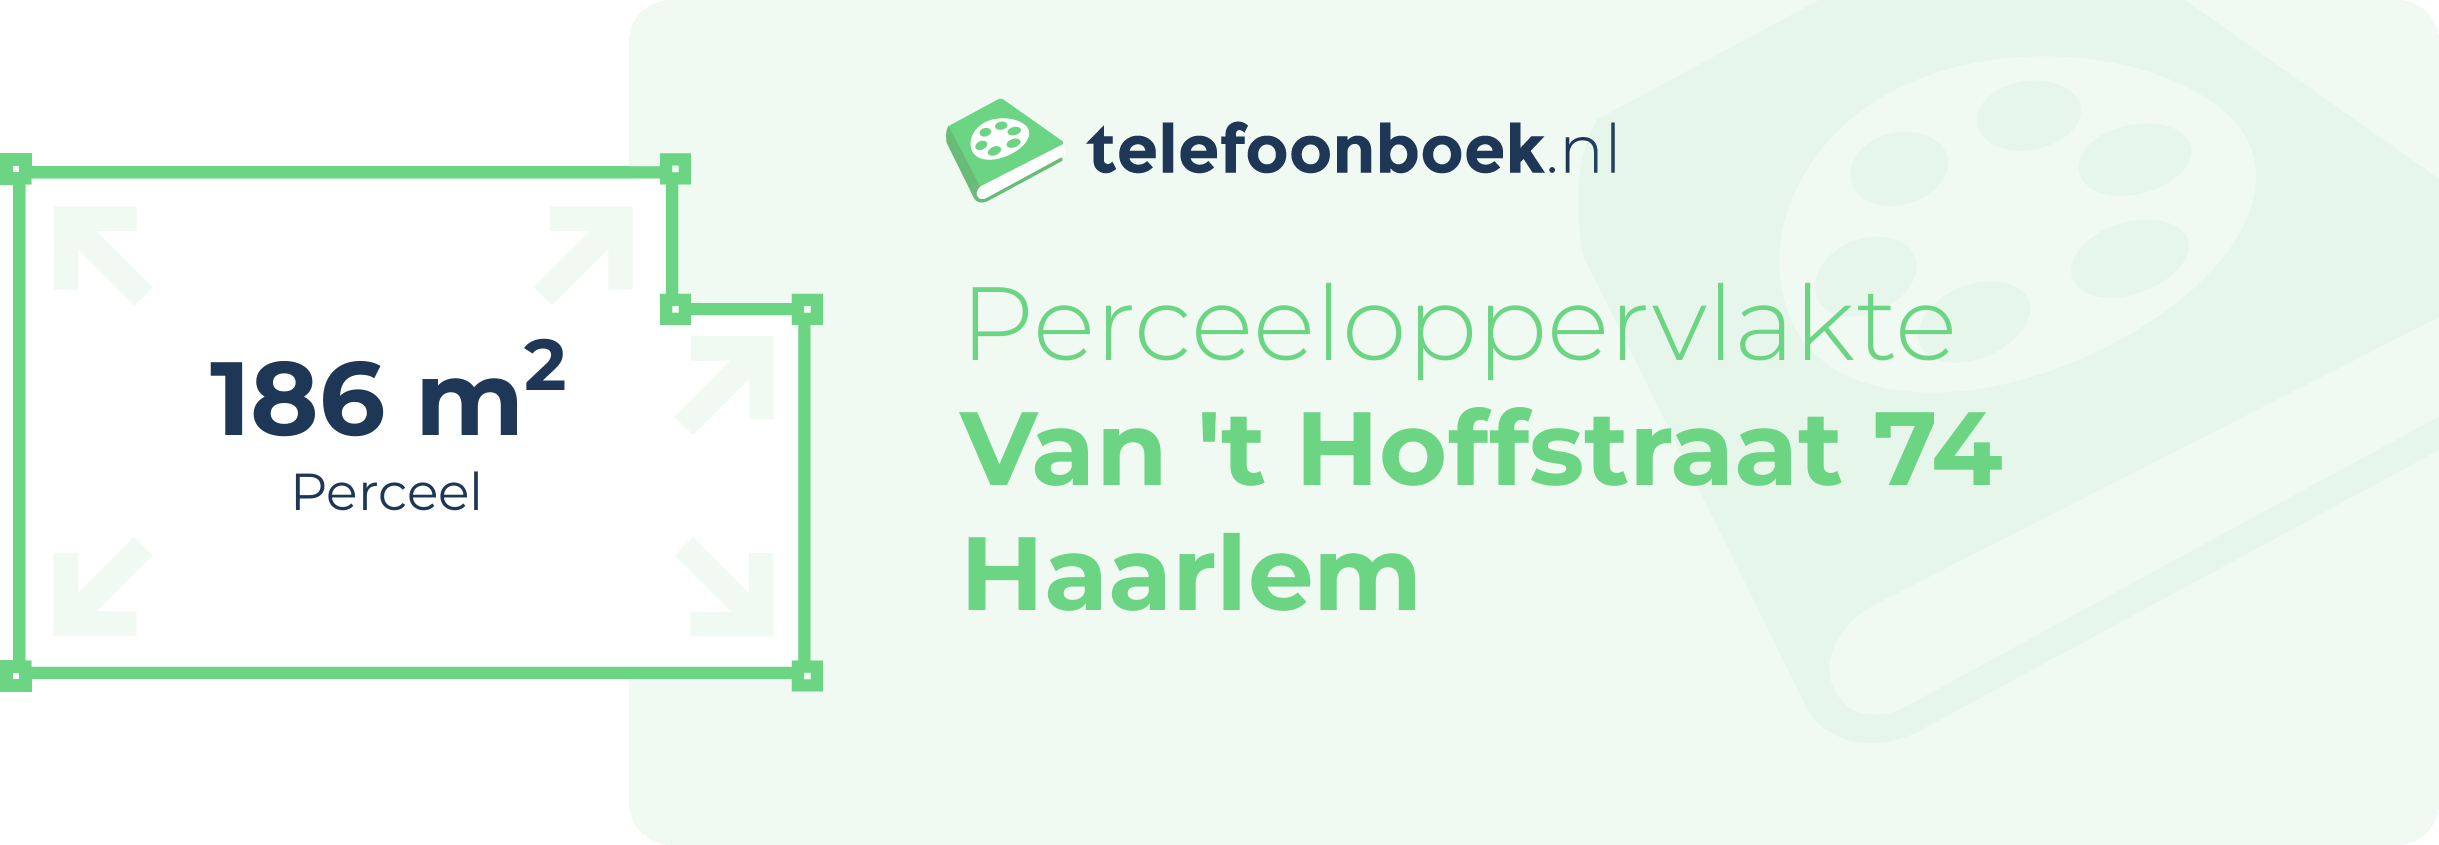 Perceeloppervlakte Van 't Hoffstraat 74 Haarlem